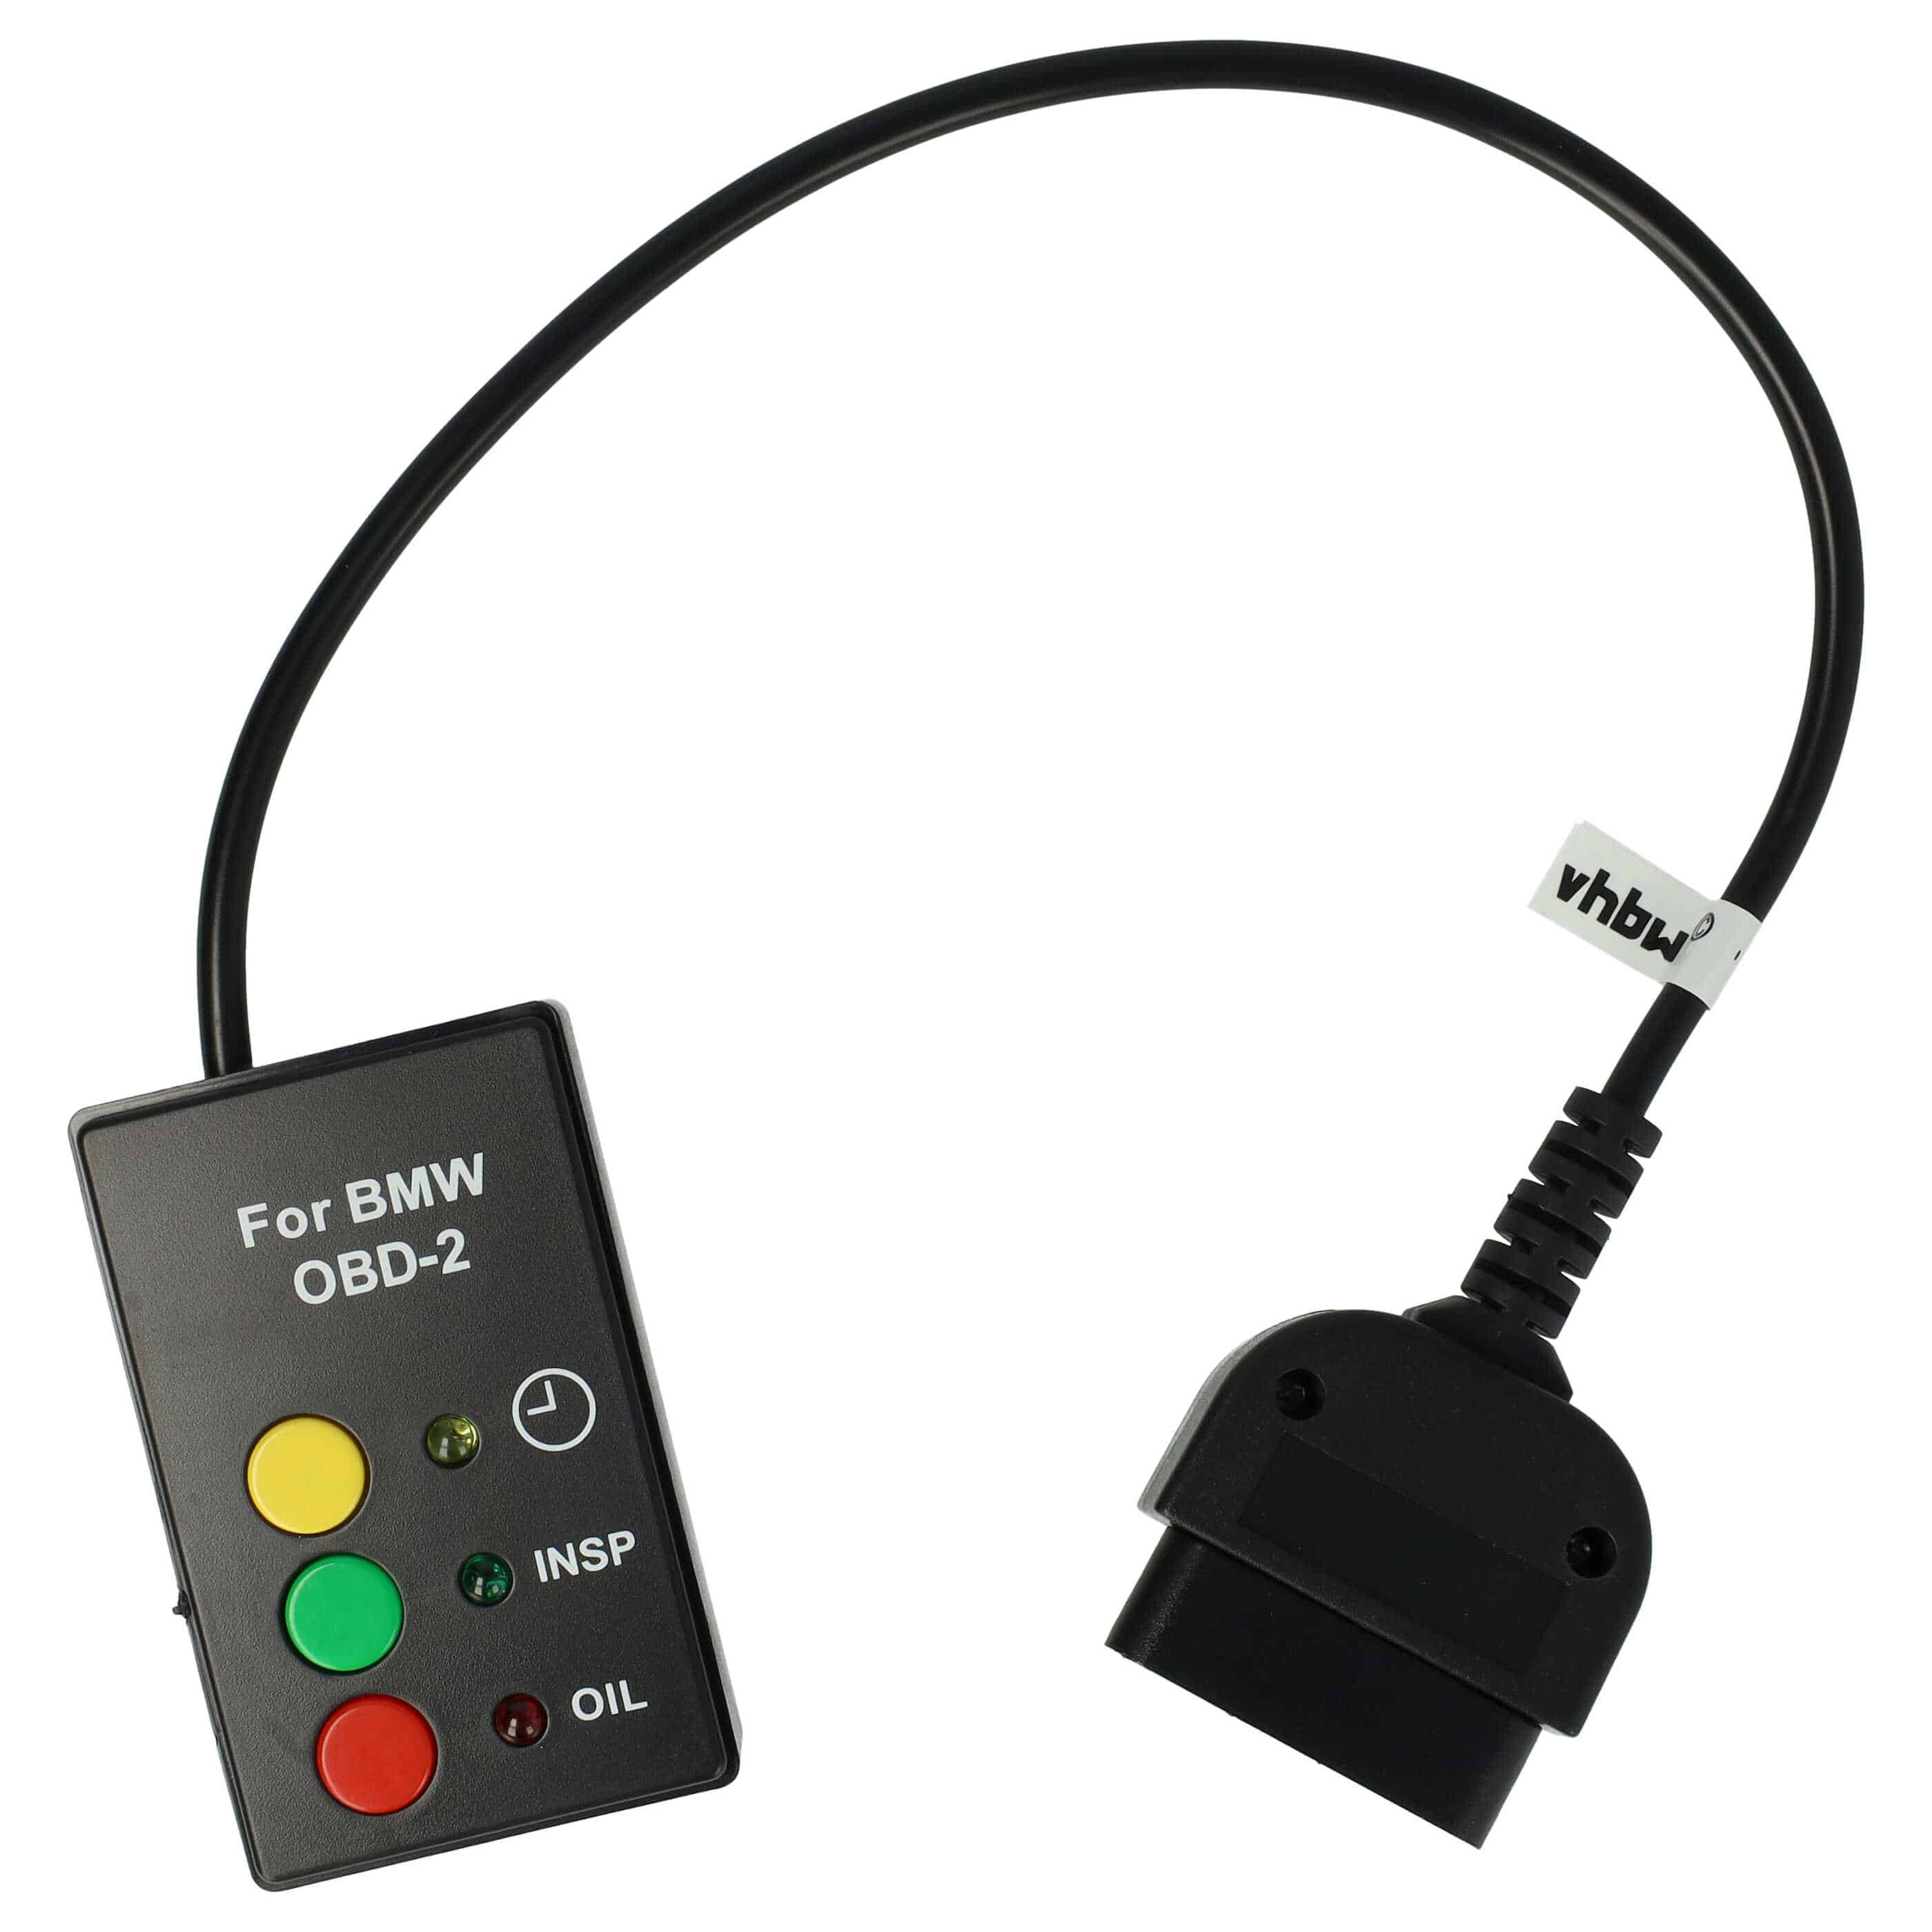 Azzeratore indicatore di servizio per MINI / BMW / Rover dall'anno di prod. 2001 - Plug & Play - Attacco OBD2